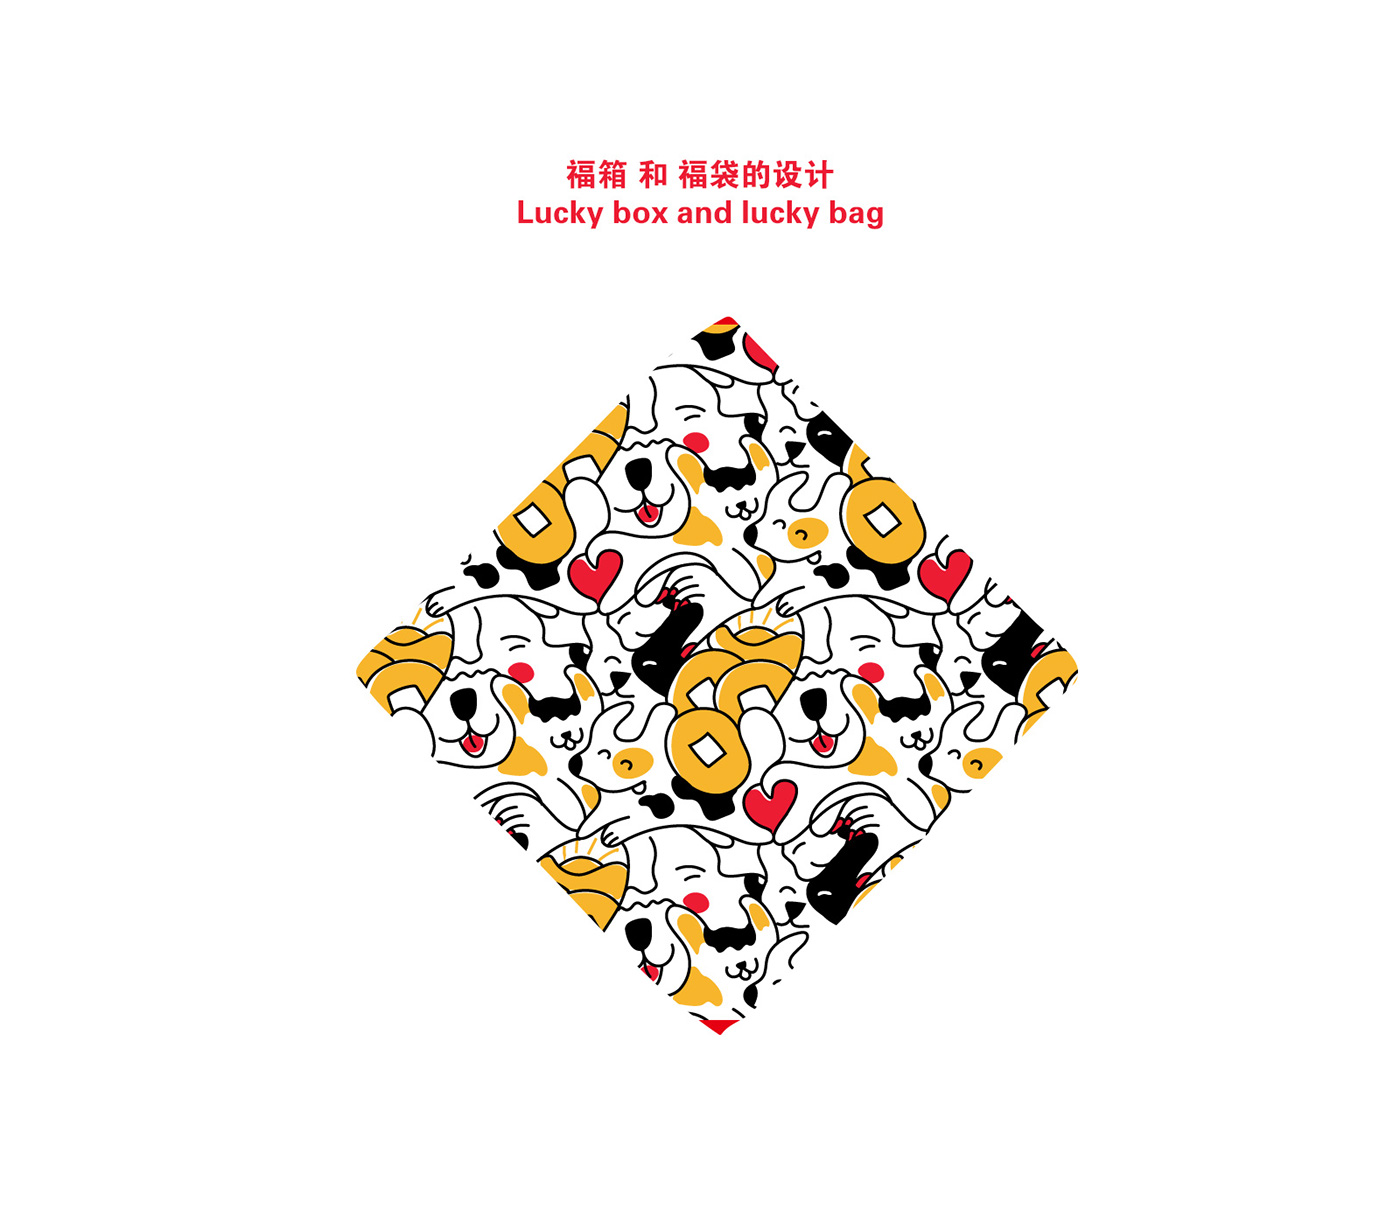 stmap wingyang chinese zodiac 狗年 邮票 中国设计师 pattern